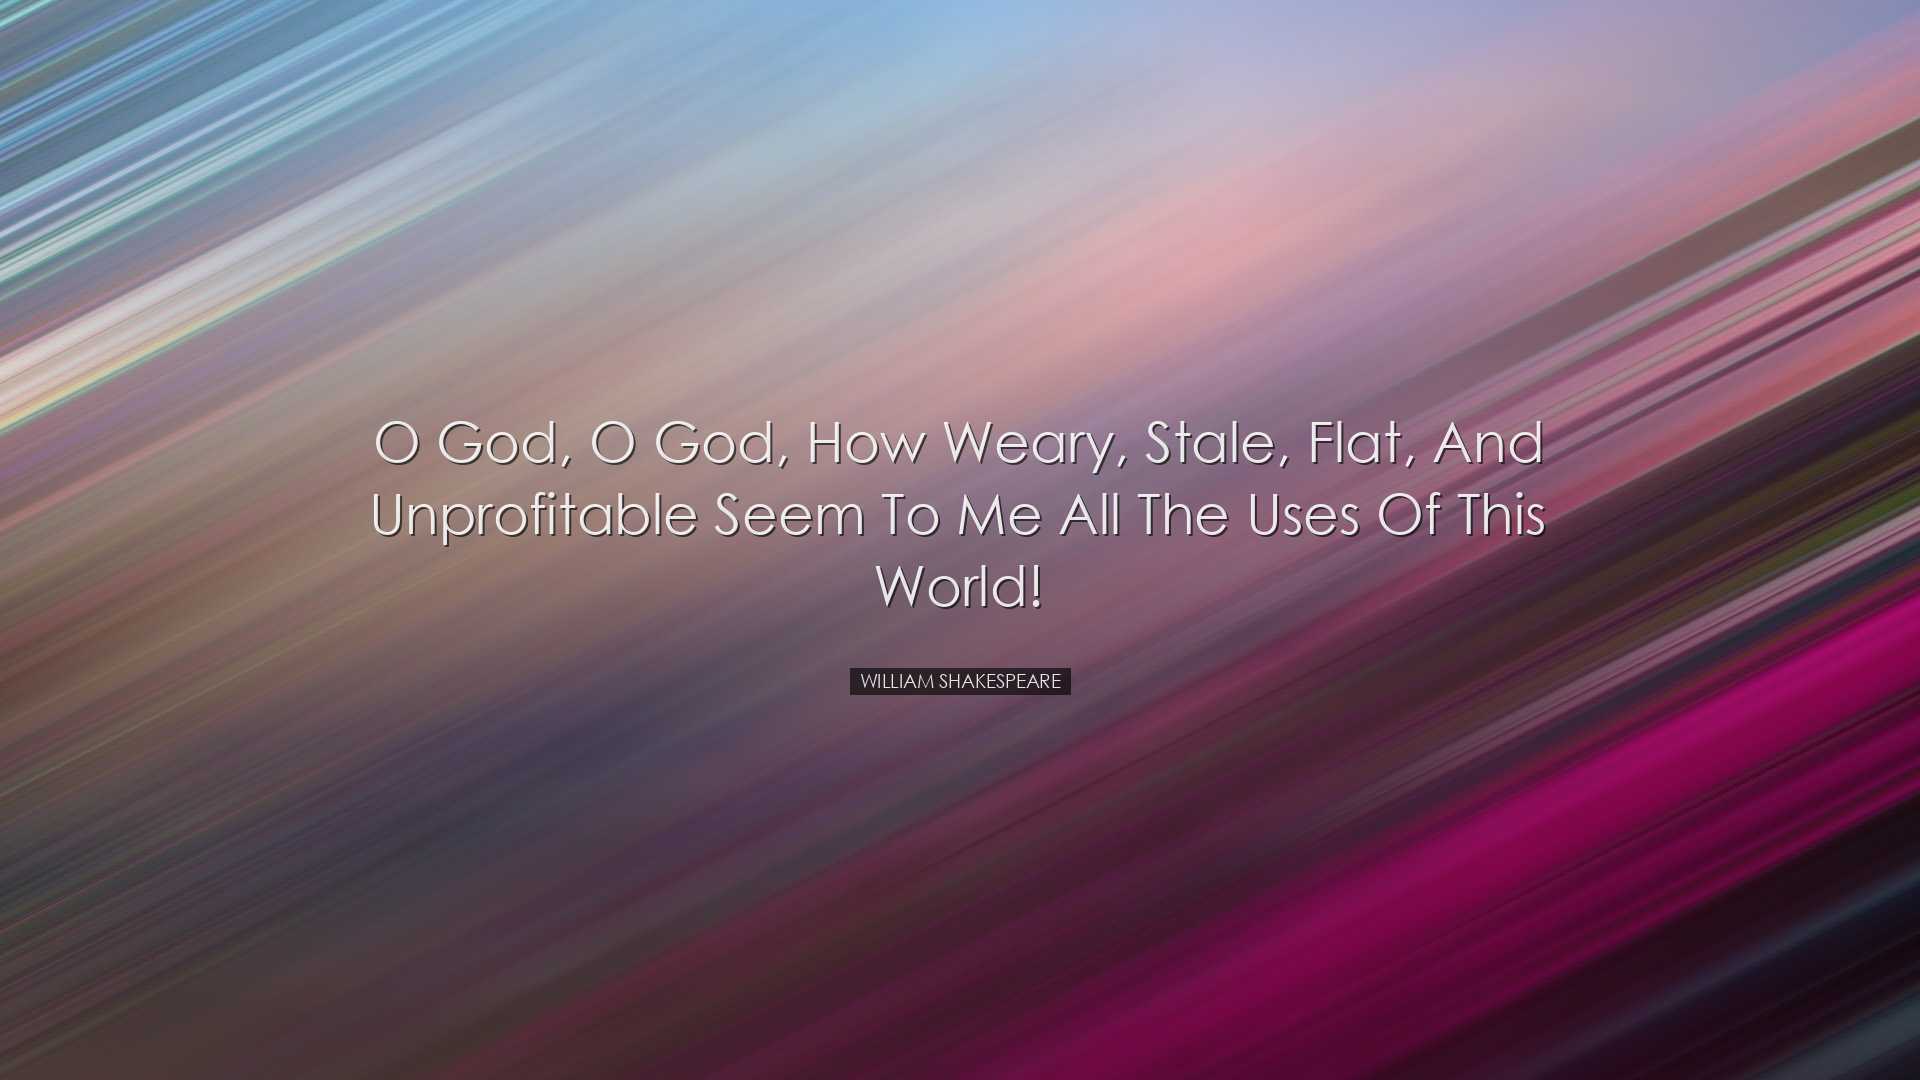 O God, O God, how weary, stale, flat, and unprofitable seem to me